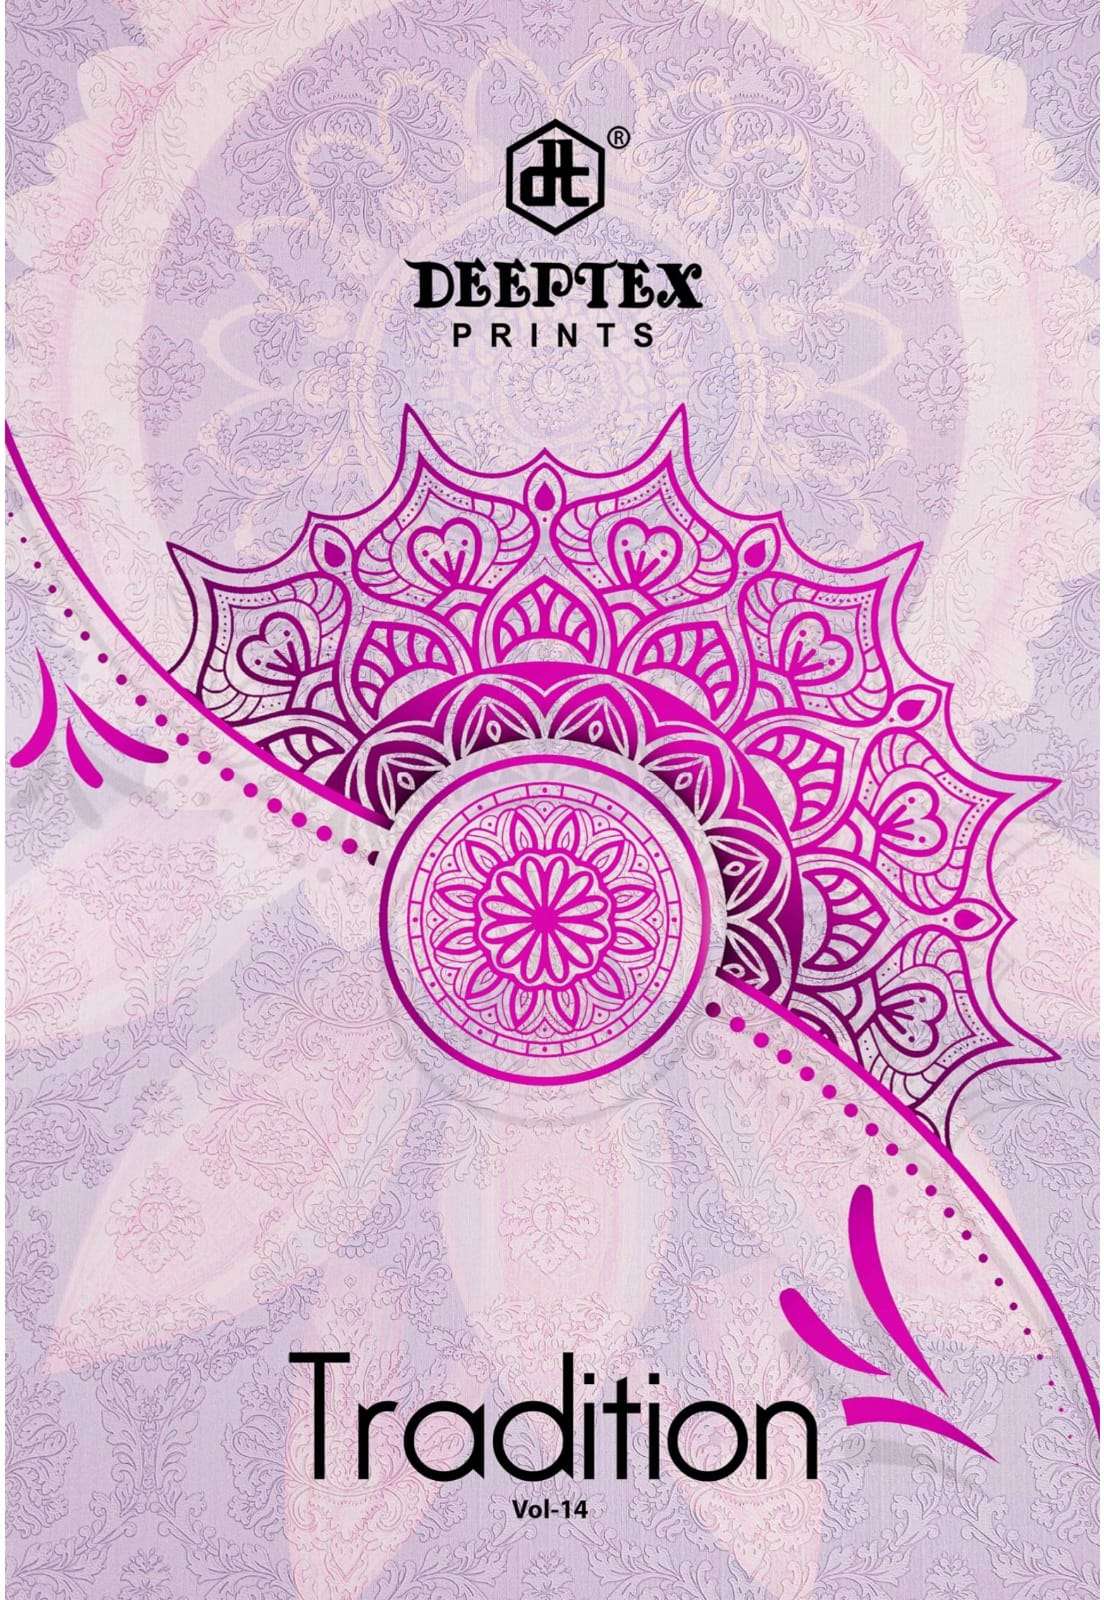 DEEPTEX PRINTS TRADITION VOL 14